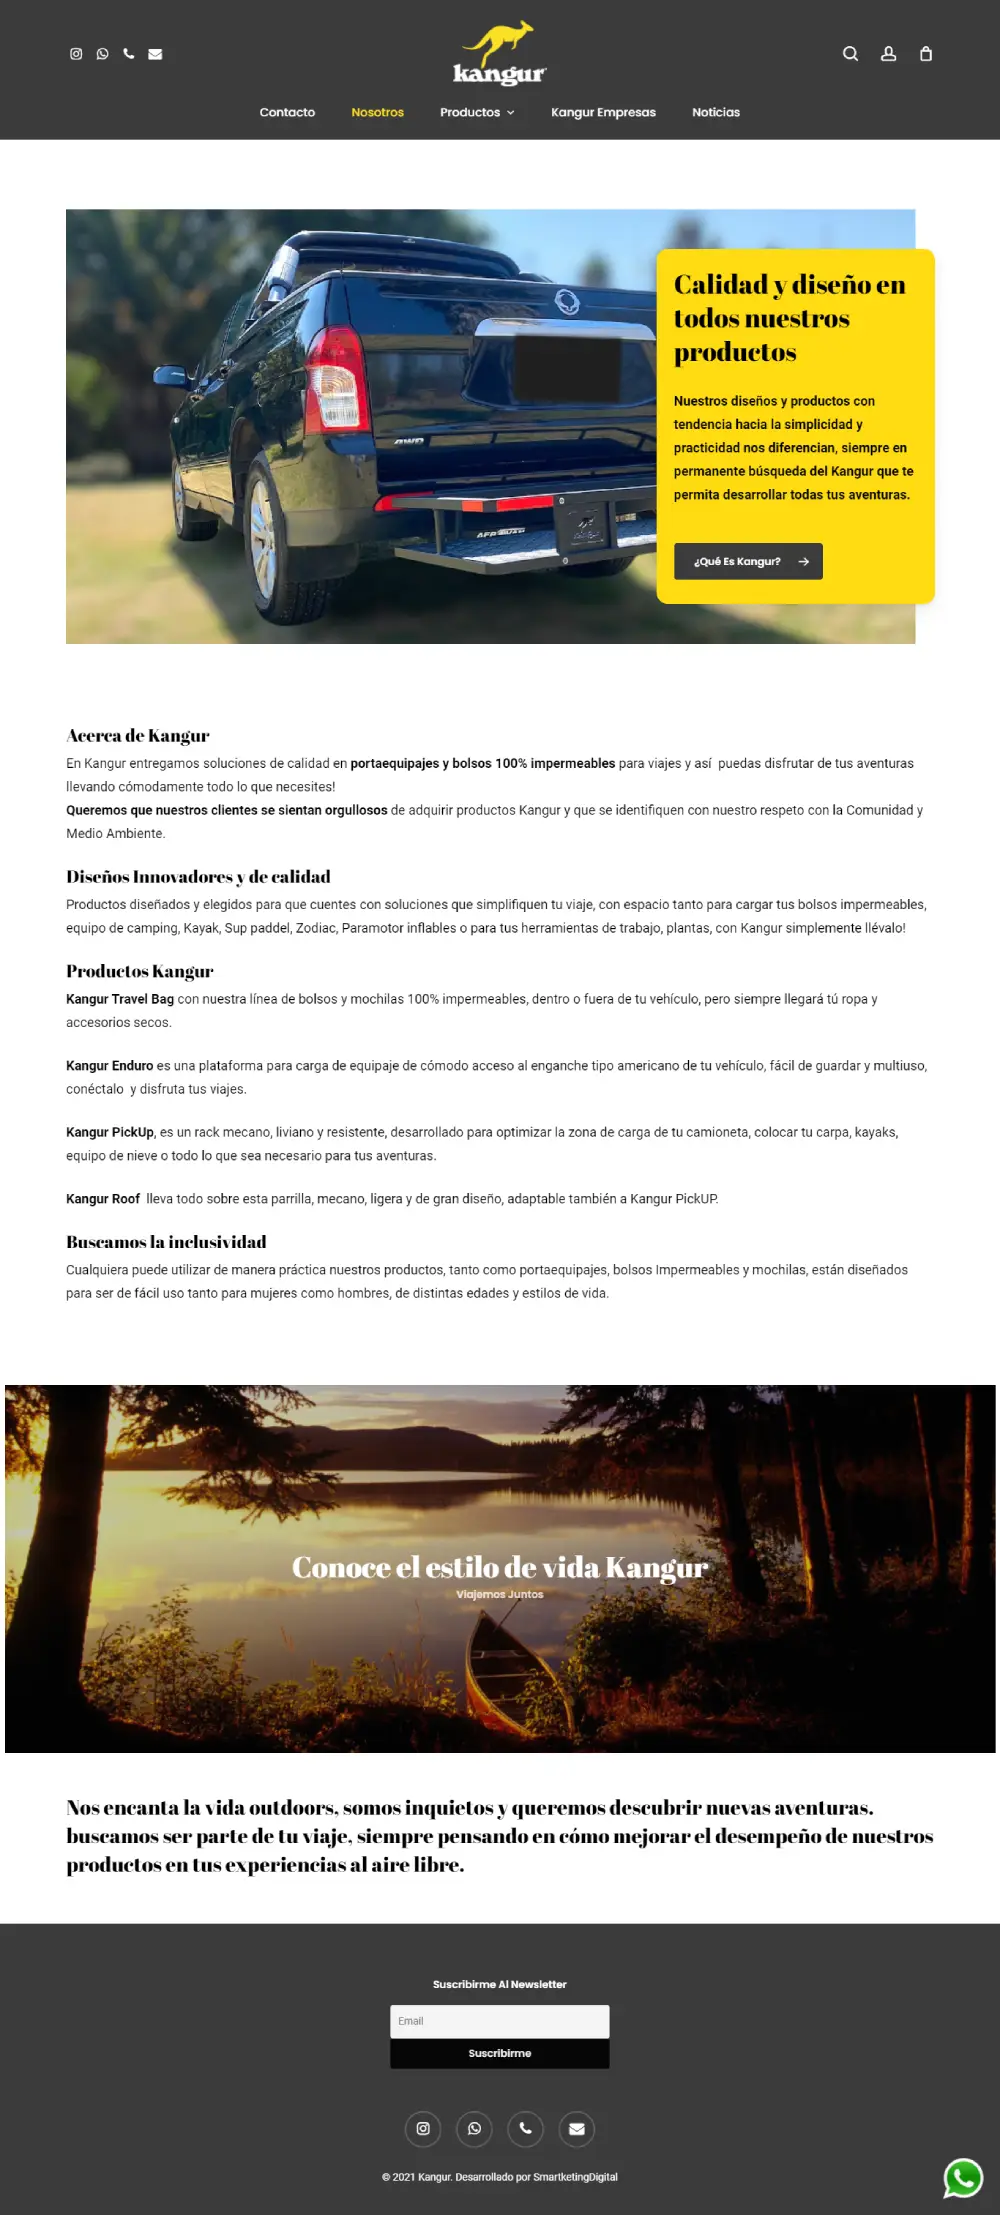 Kangur - sitio desarrollado por Risi.cl y Smartketingdigital